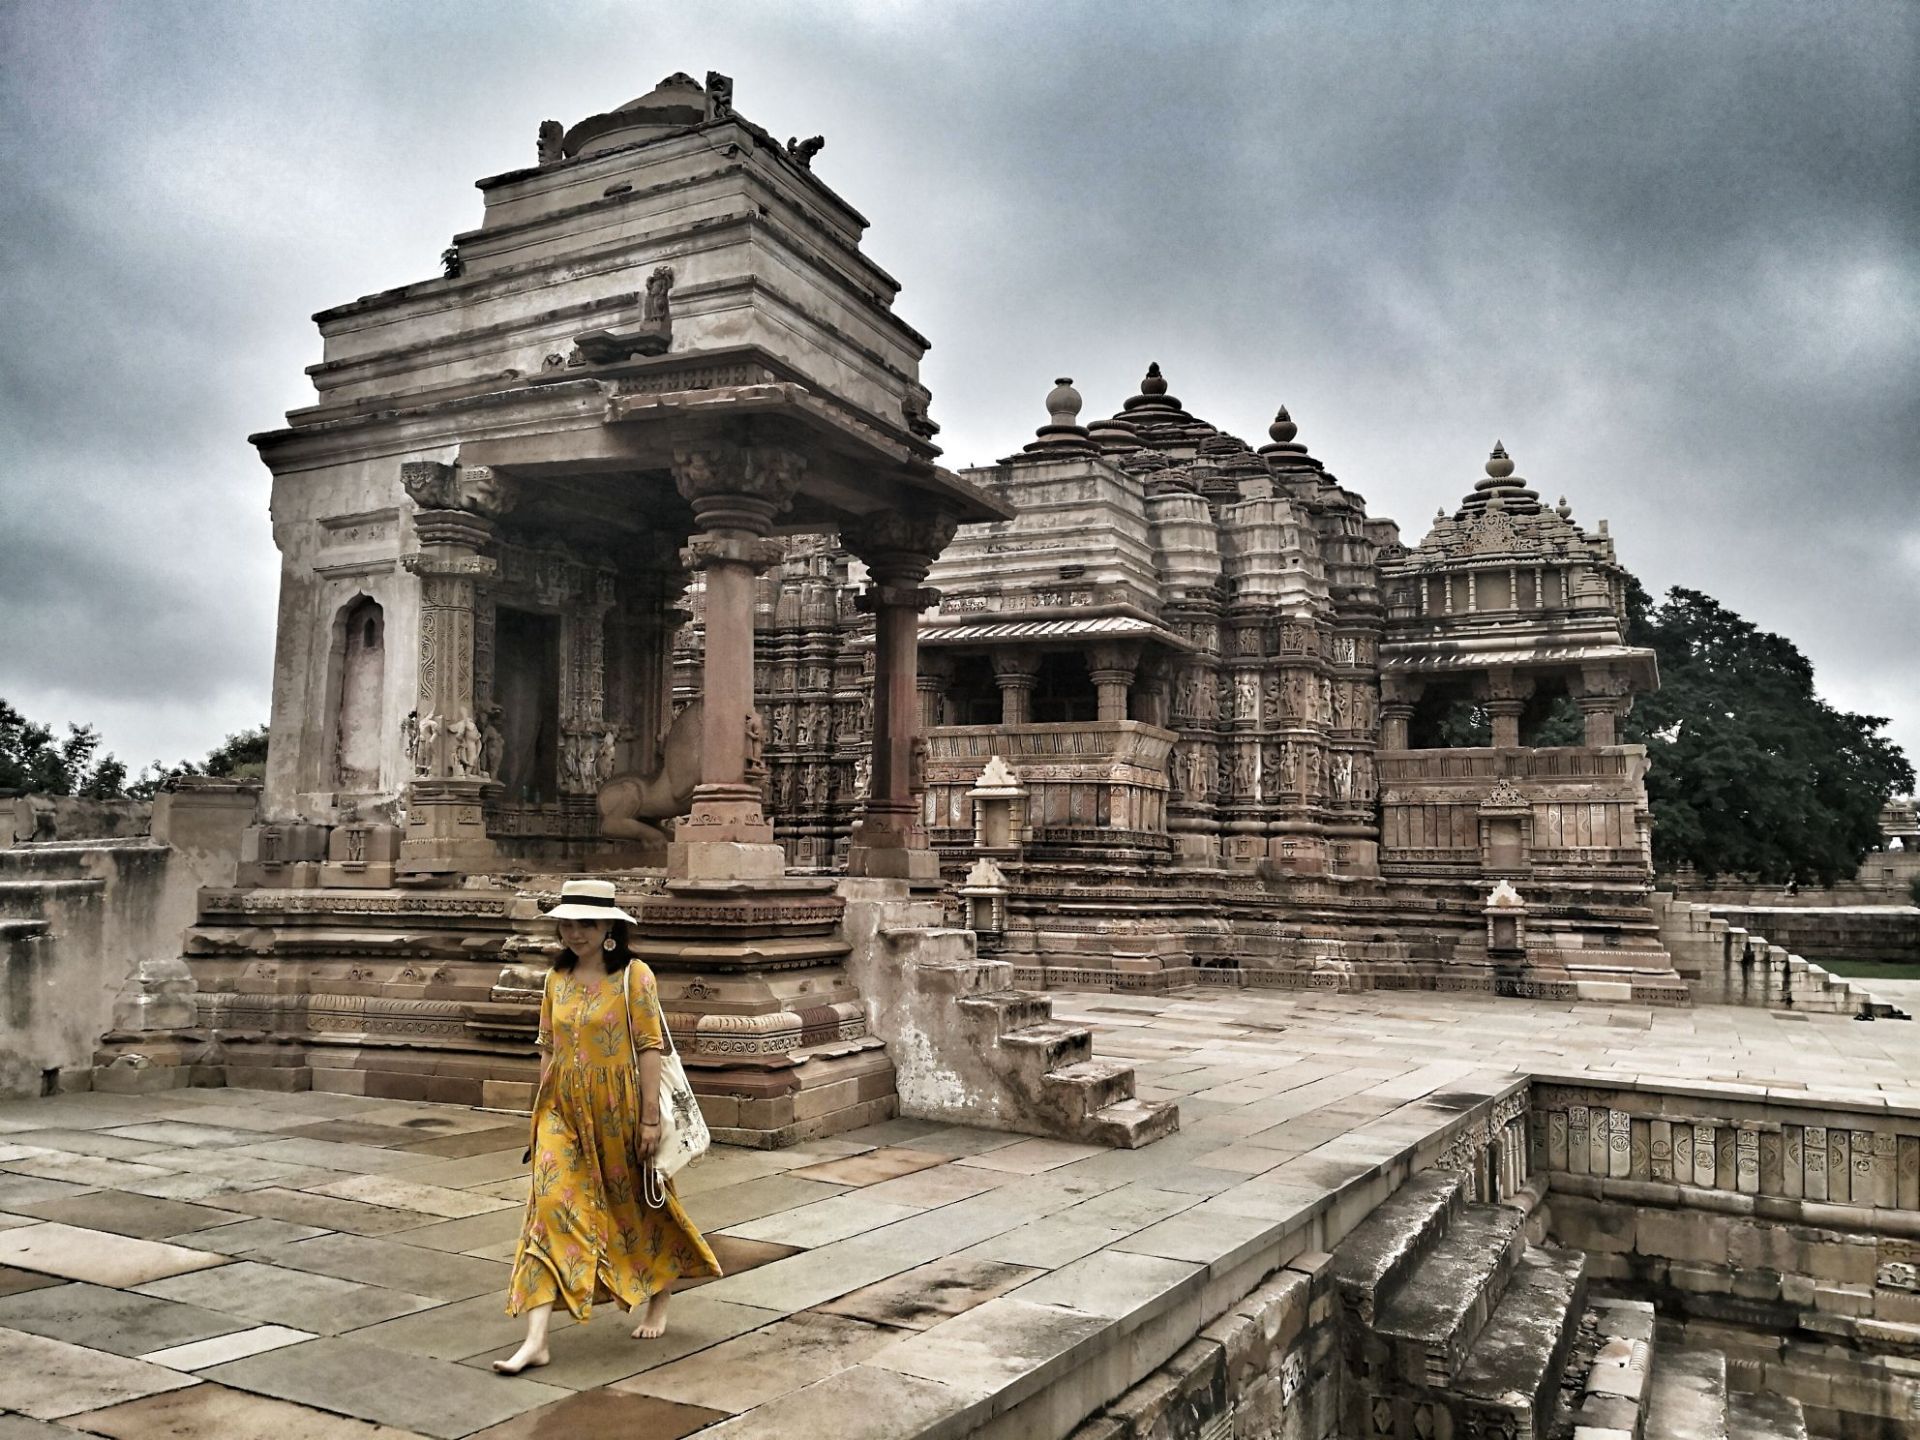 克久拉霍：在印度的寺庙建筑上始终保持着独一无二的地位。它是在旃代罗王朝几代拉其普特王的赞助下建成的，